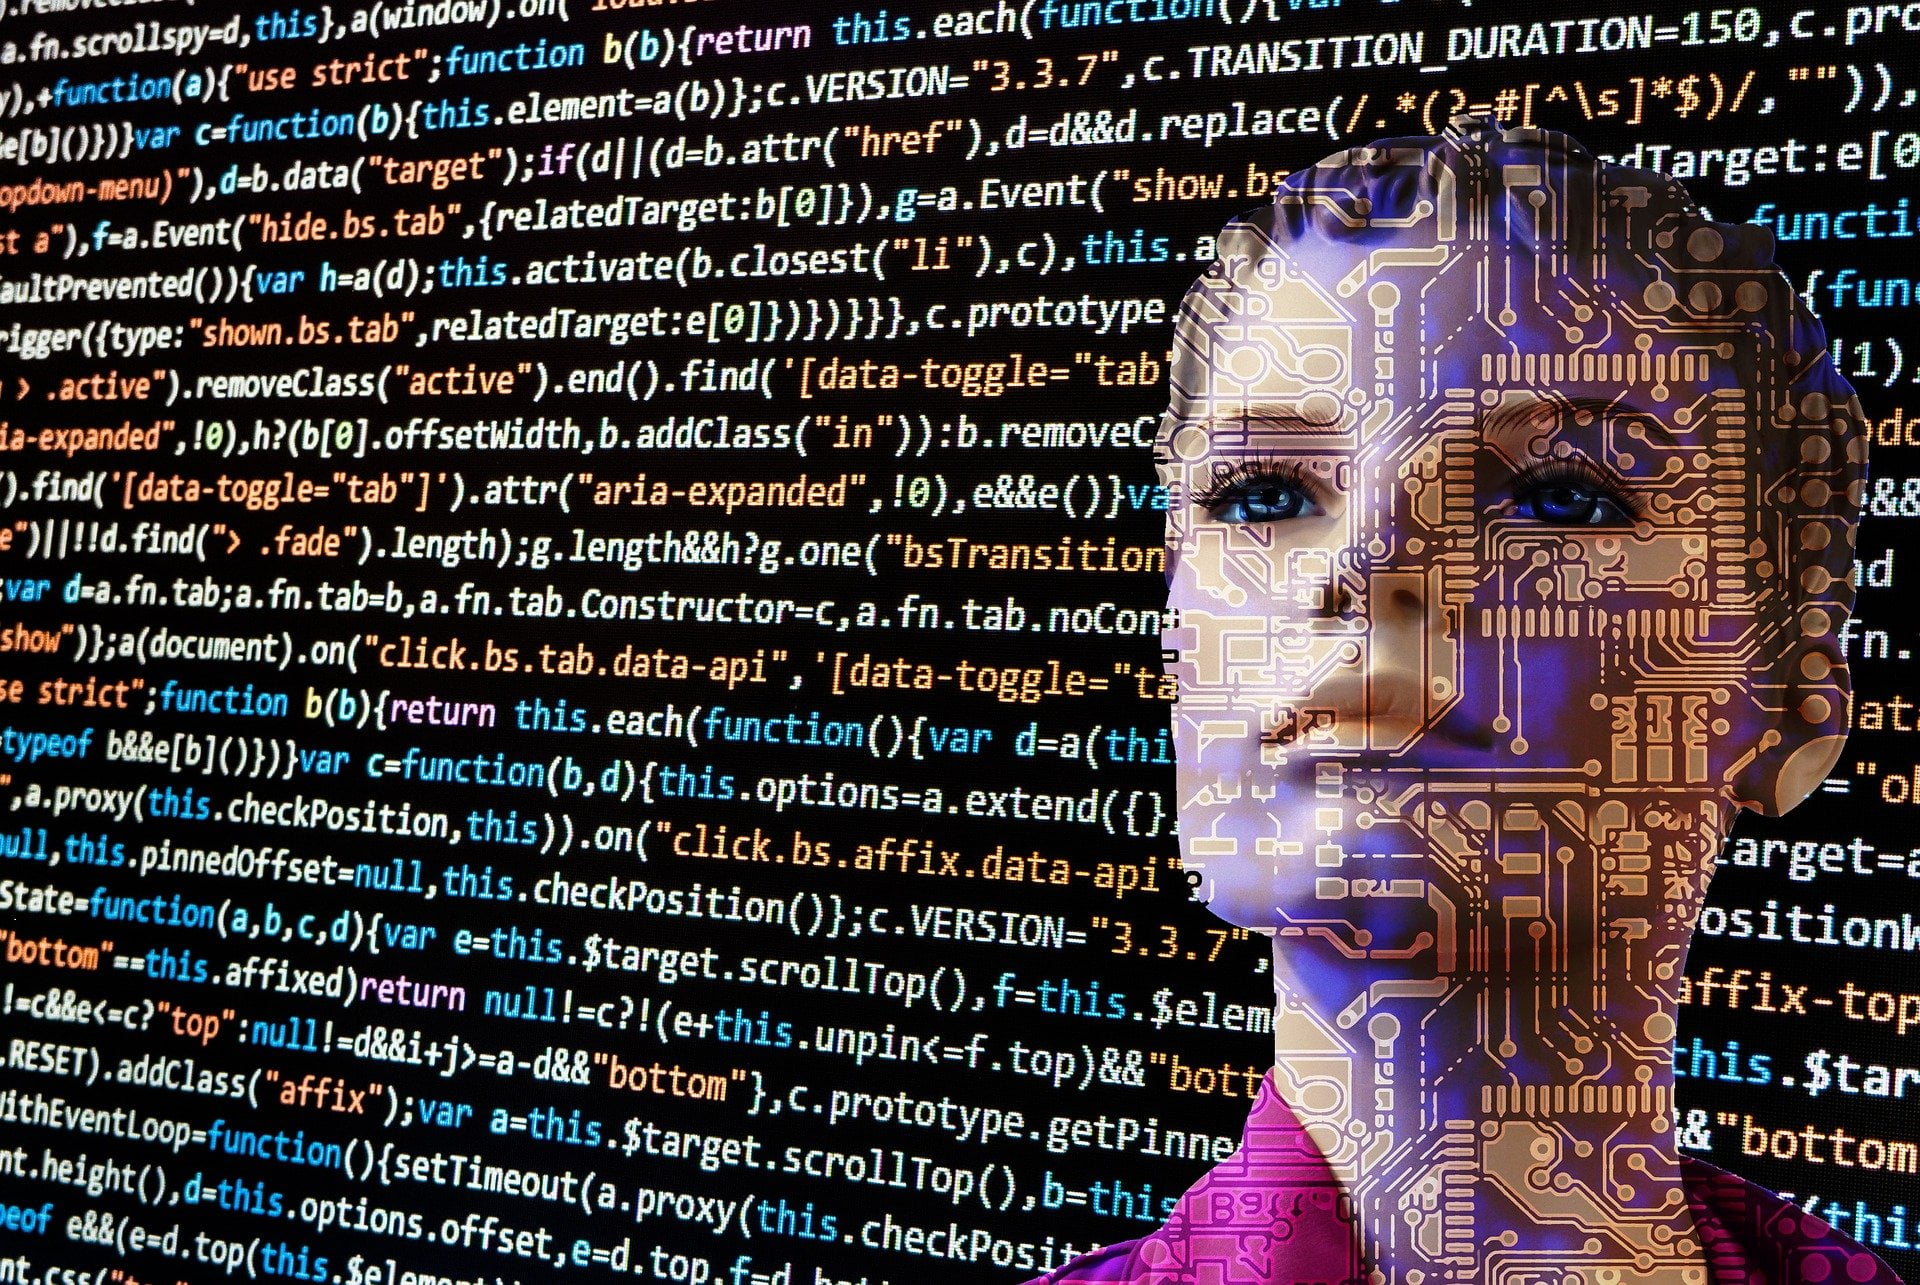 Projeto de Marco Legal da IA ainda é superficial, apontam especialistas